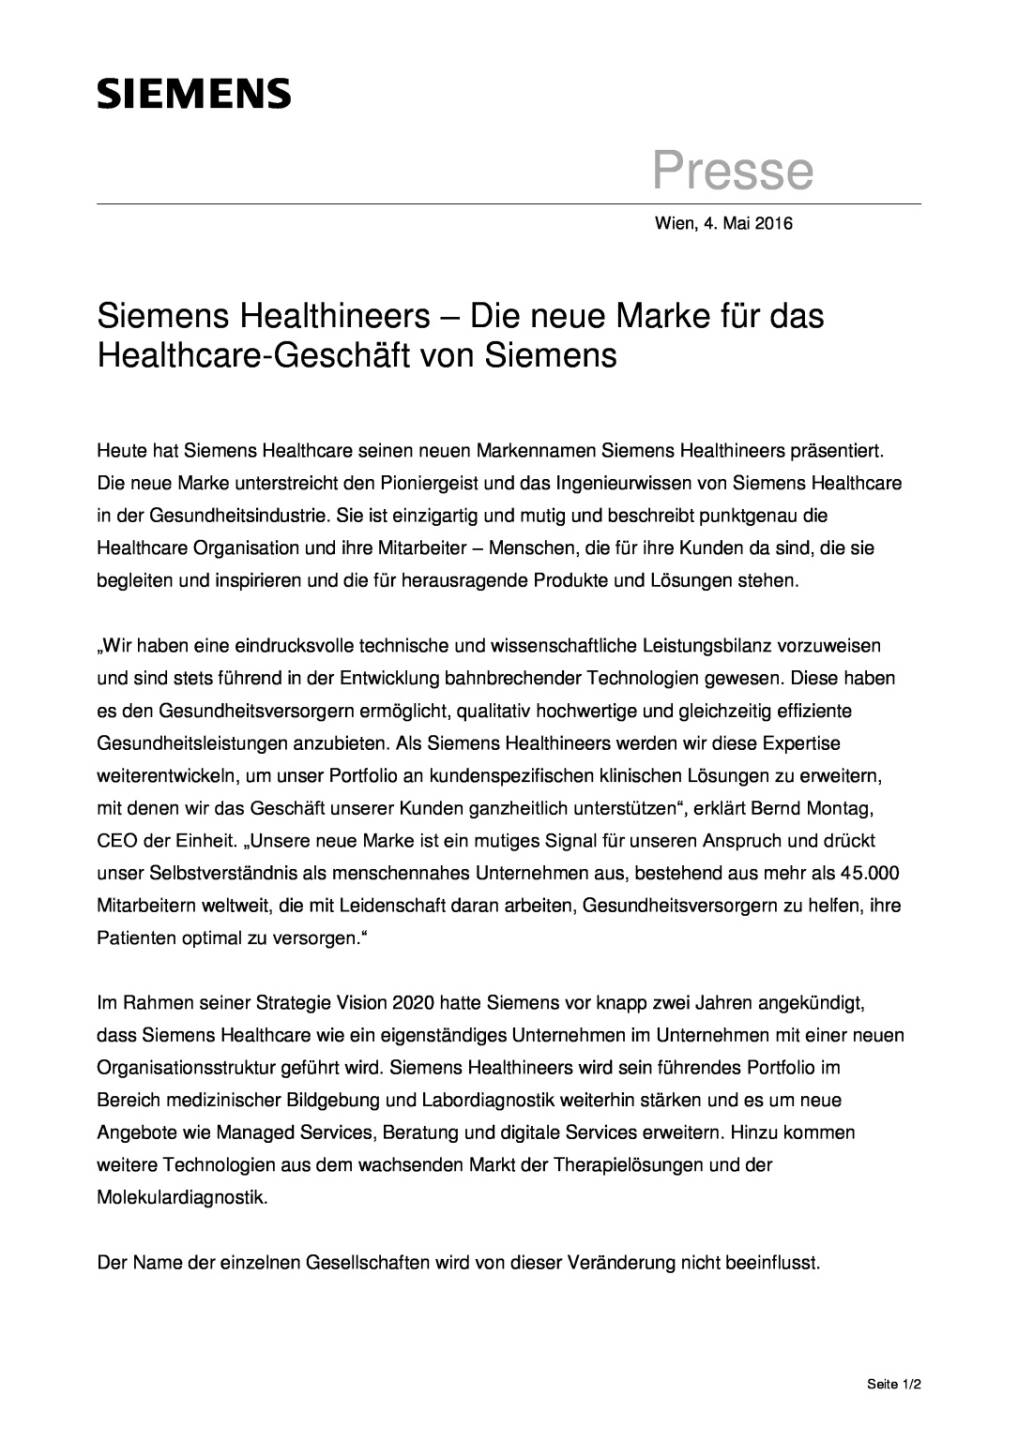 Siemens Healthineers – Die neue Marke für das Healthcare-Geschäft, Seite 1/2, komplettes Dokument unter http://boerse-social.com/static/uploads/file_1012_siemens_healthineers_die_neue_marke_fur_das_healthcare-geschaft.pdf